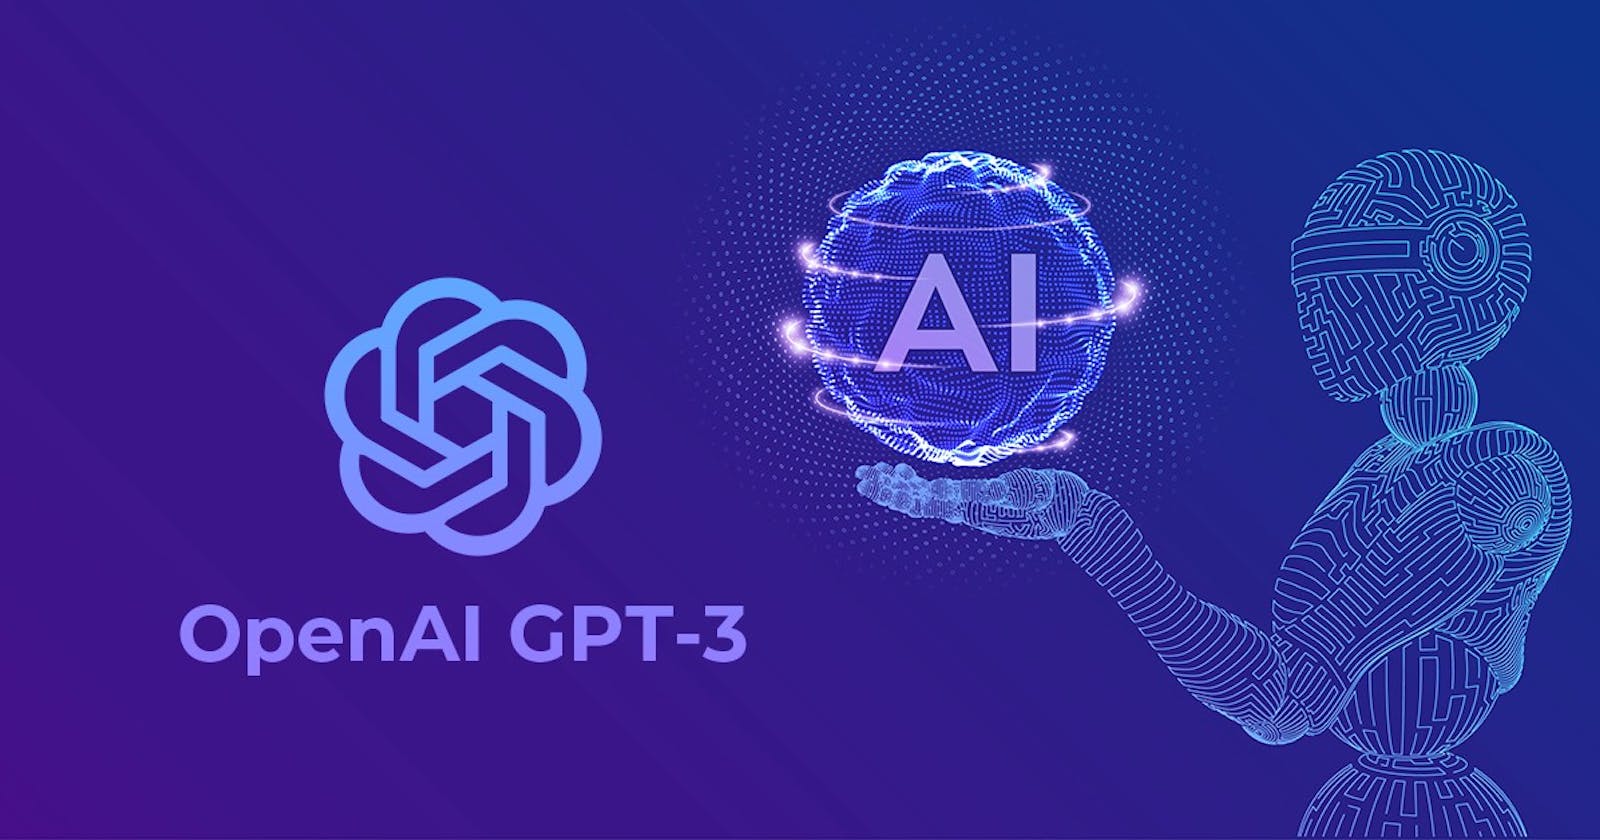 OpenAI GPT-3: Path to revolutionize AI